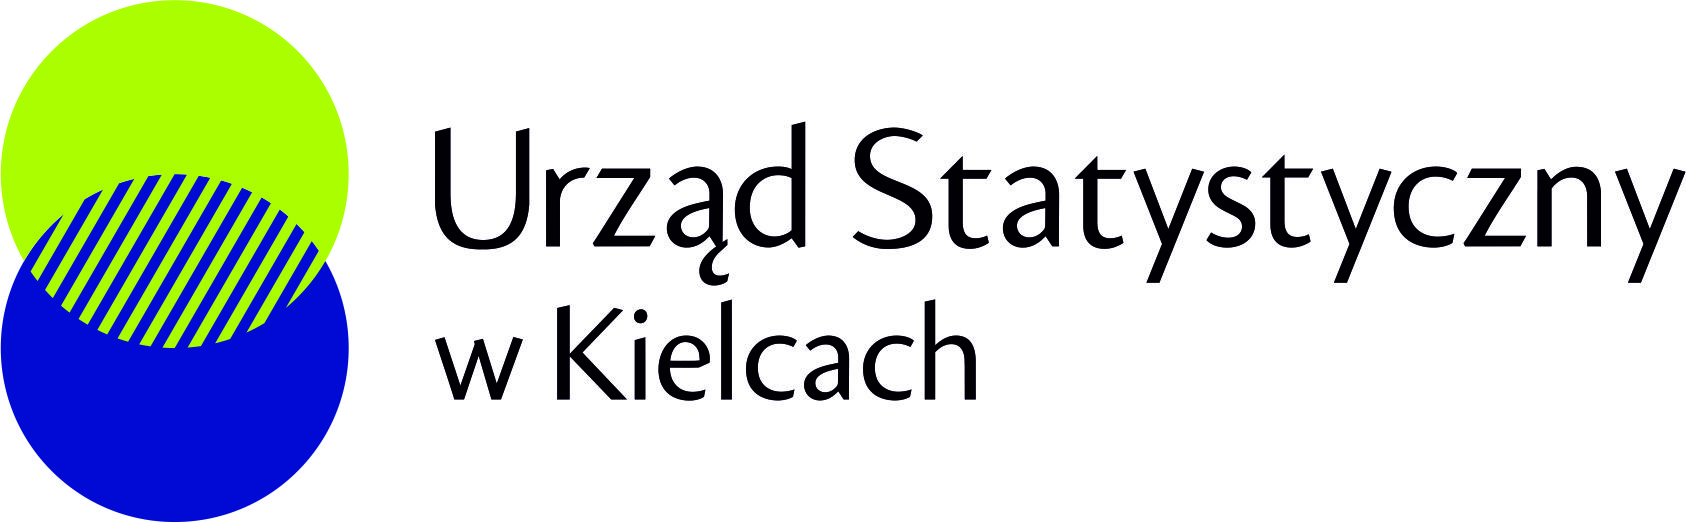 Urząd Statystyczny w Kielcach